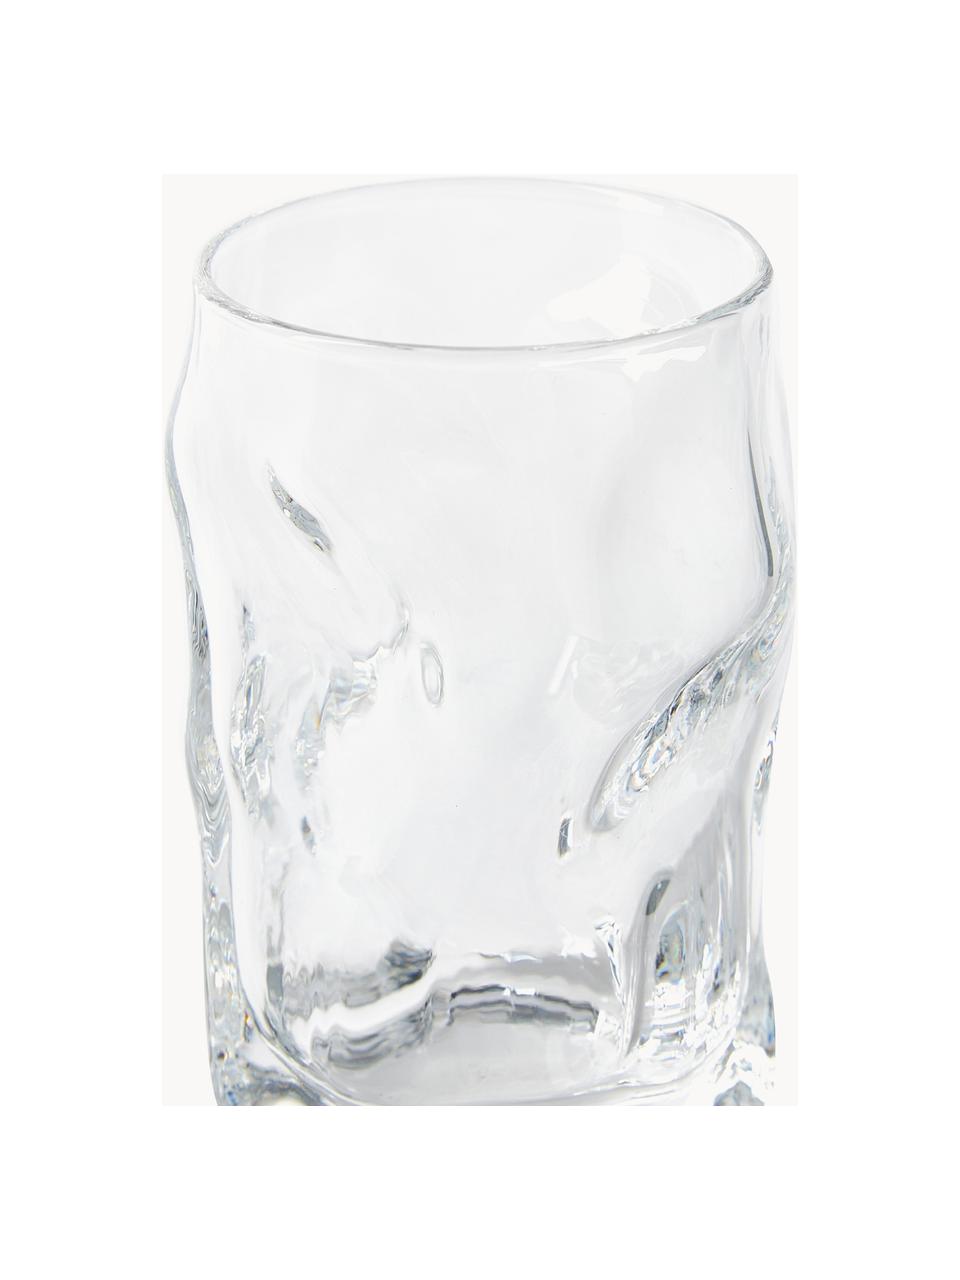 Schnapsgläser Sorgente in organischer Form, 6 Stück, Glas, Transparent, Ø 5 x H 8 cm, 70 ml